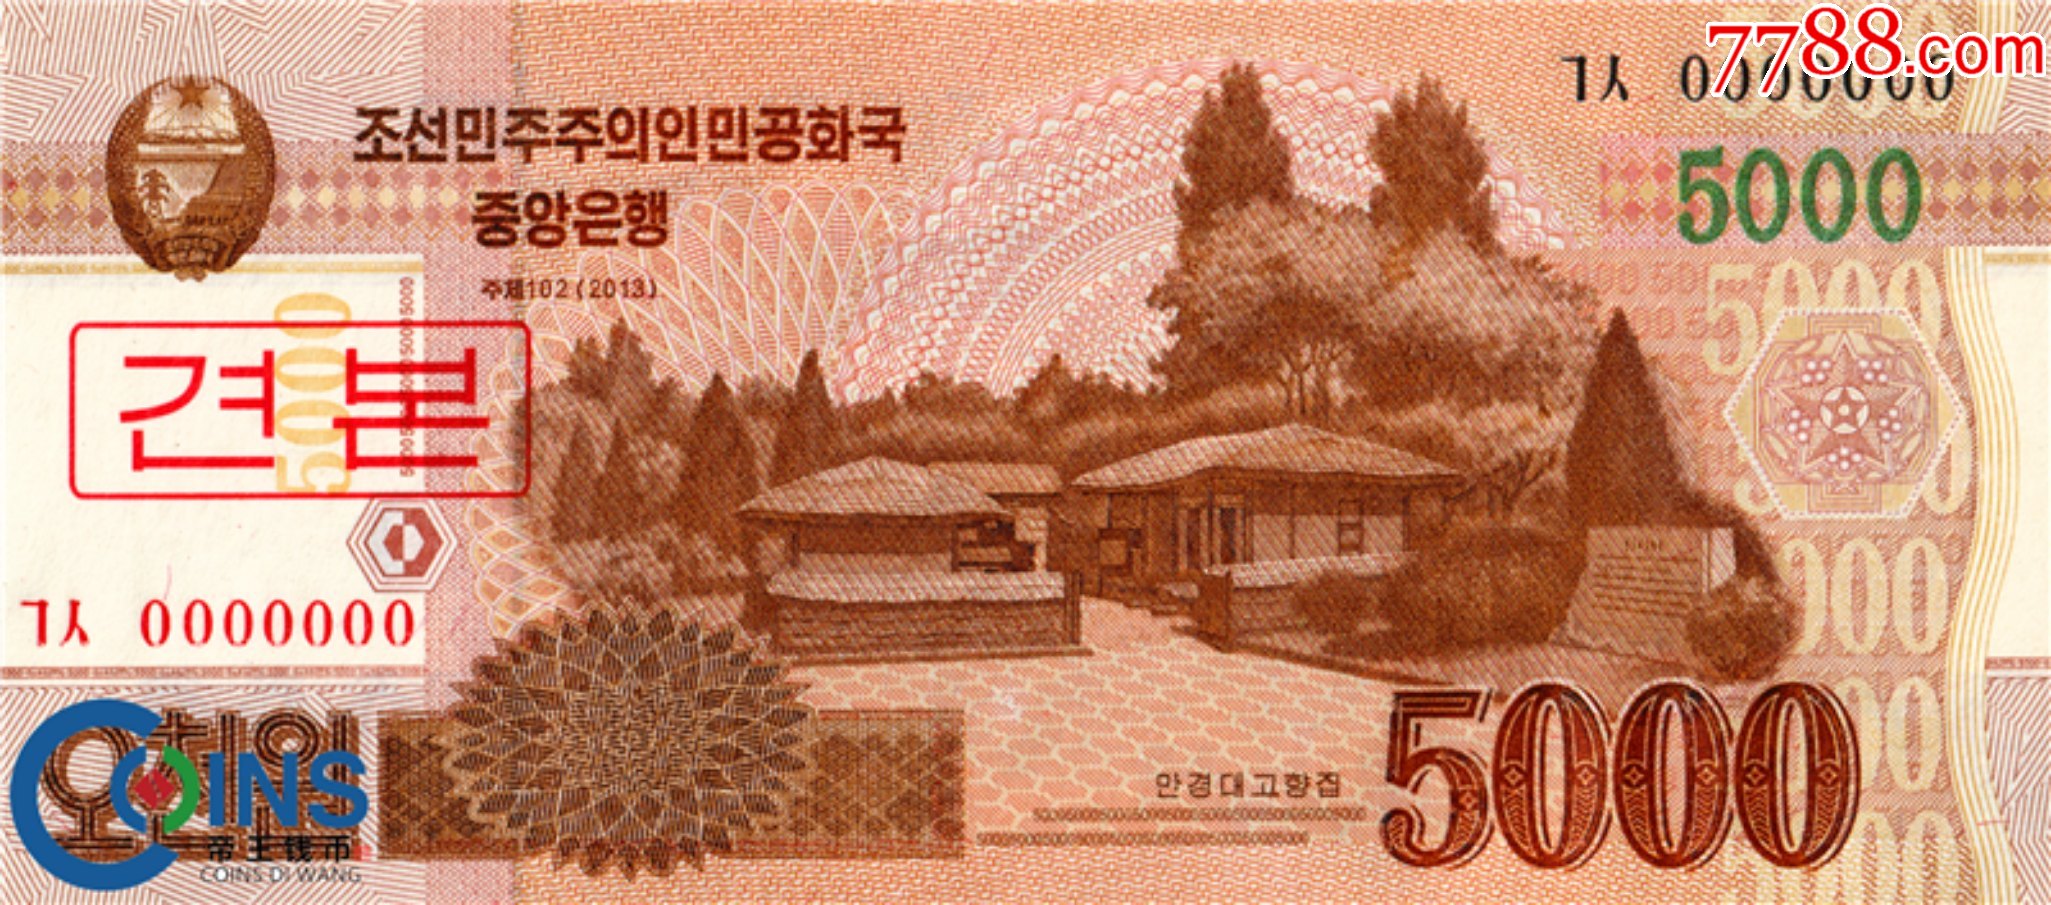 5000朝鲜币图片正反面图片